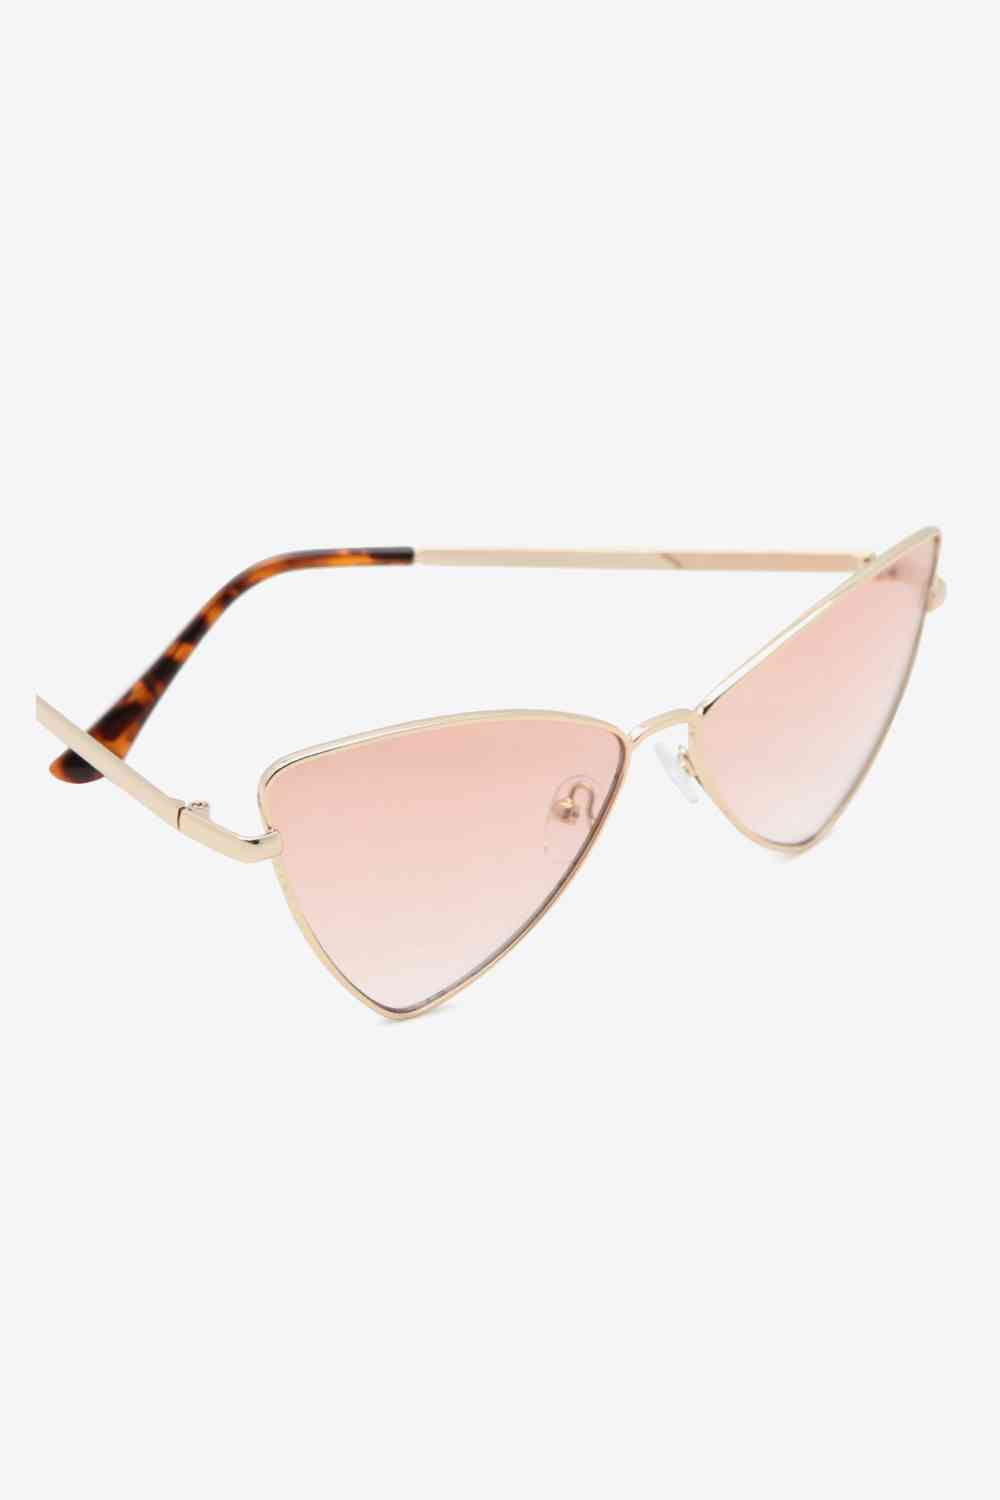 TEEK - Metal Frame Cat-Eye Sunglasses EYEGLASSES TEEK Trend   